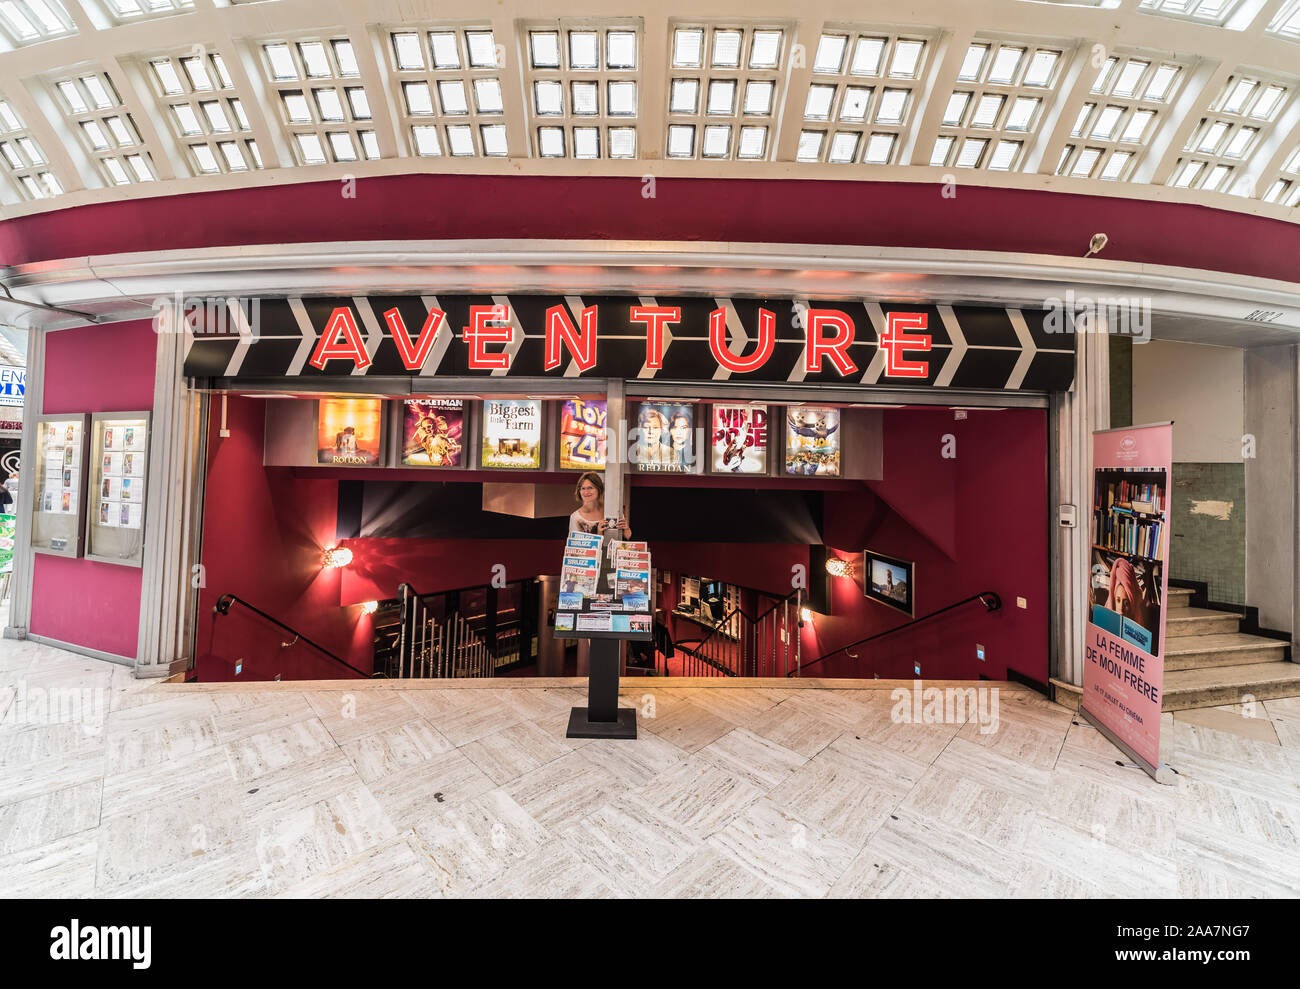 Brüsseler Altstadt/Belgien - 07. 18. 2019: Junge Frau steht vor dem Eingang des Abenteuers vintage Kino Stockfoto